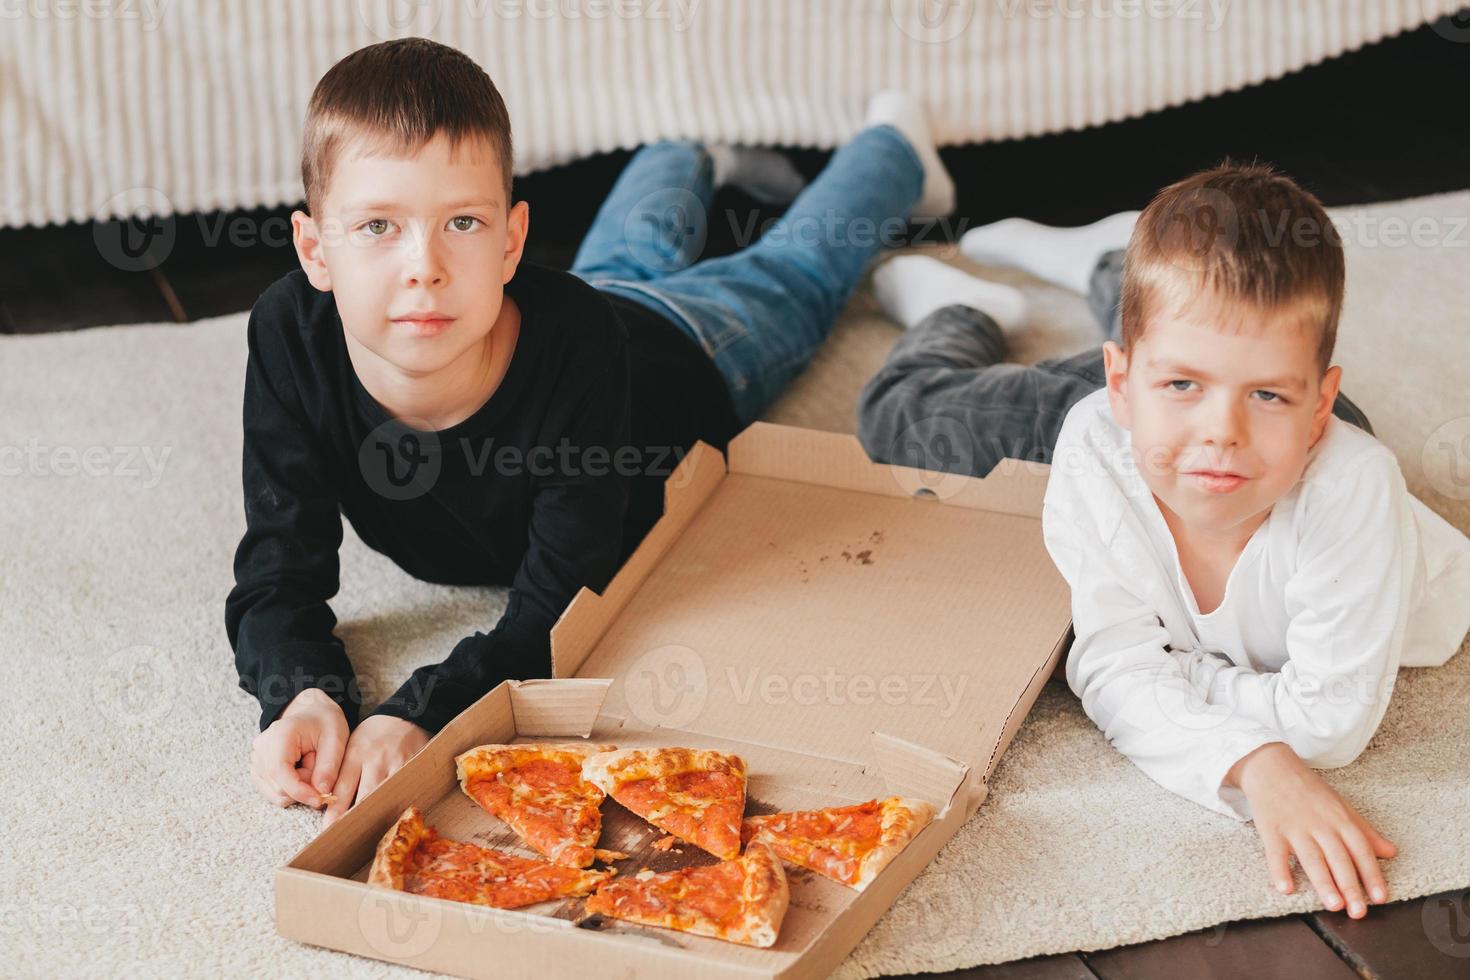 deux garçons allongés sur le sol mangeant de la pizza au pepperoni dans une boîte. cadre vertical. deux garçons allongés sur le sol mangeant de la pizza au pepperoni dans une boîte. photo